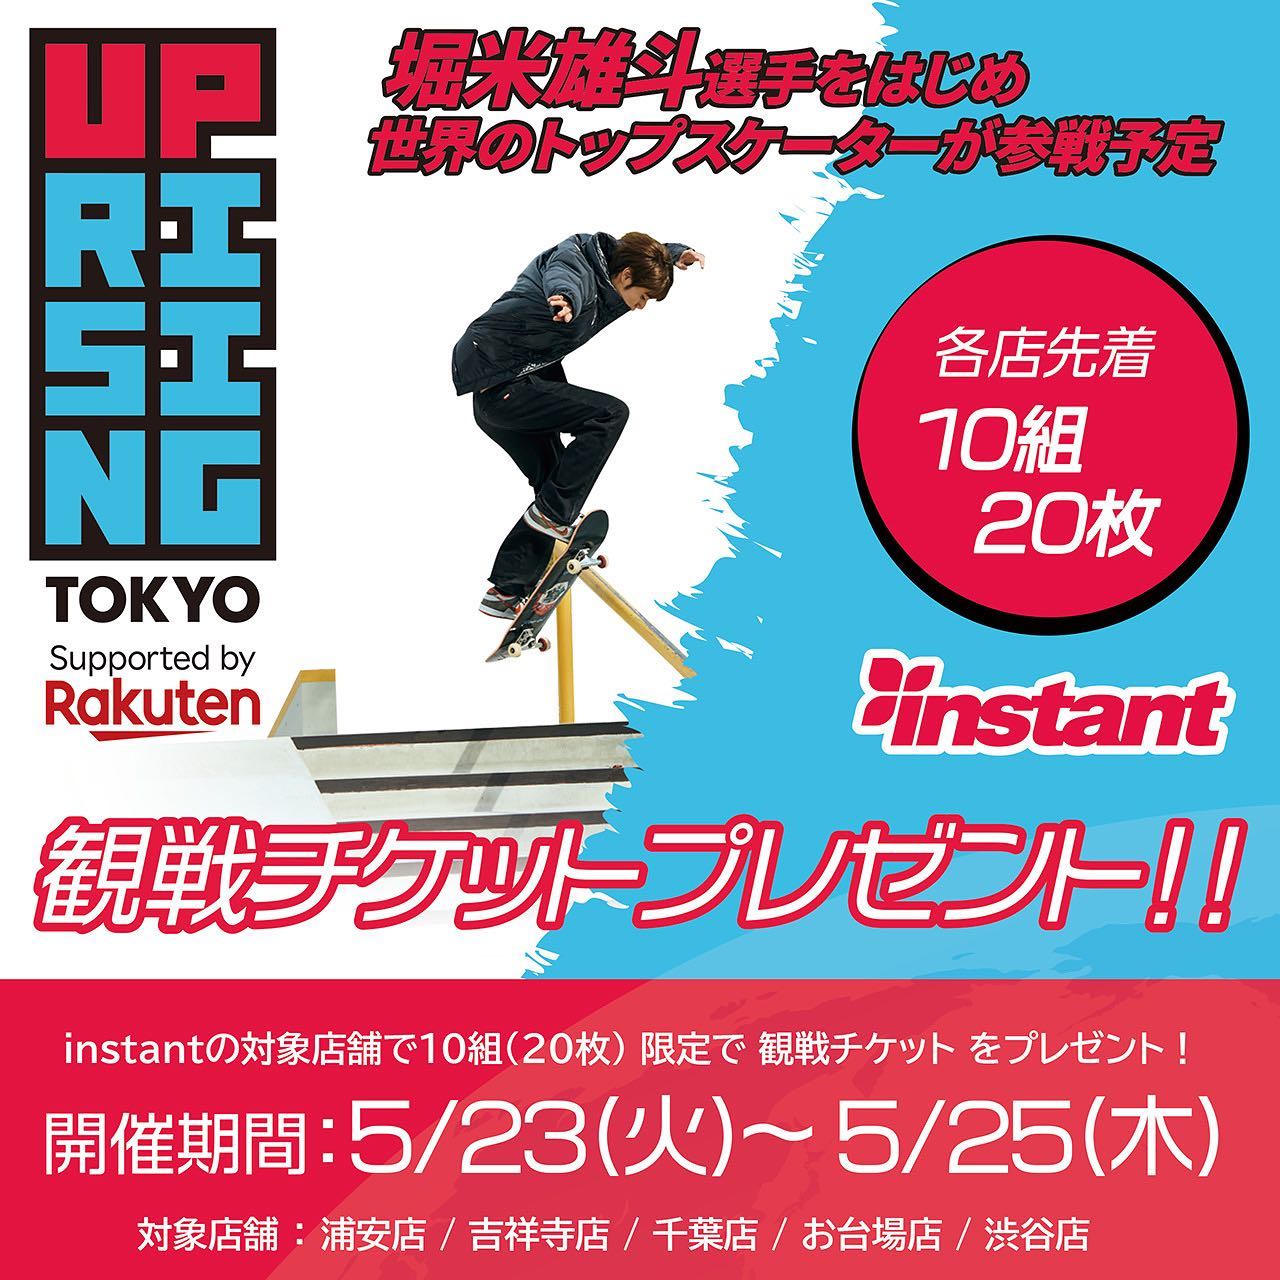 今週末に予定しているUPRISING TOKYO(UR STREET)への出店を記念して、観戦チケットプレゼントキャンペーンを緊急開催開催期間5/23(火)～ 5/25(木)【応募条件】① @uprisingtokyo と @instant_skateboards をタグ付けして、この投稿をストーリーズに追加② @uprisingtokyo と @instant_skateboards をフォロー③対象店舗に直接チケットを受け取りに行ける方対象店舗：浦安店/吉祥寺店/千葉店/お台場店/渋谷店④受け取り希望の店舗のインスタグラムアカウントをフォロー⑤この投稿にいいね！を押す【チケットのお受渡しについて】対象店舗にご来店のうえ、応募条件が満たされているか確認させて頂きます。OKの場合はその場でチケットをプレゼントいたします。【注意事項】チケットは5/26(準々決勝)の観戦、5/27(準決勝)の観戦、5/28(決勝＆ベストトリック)の観戦で1日ごとに分かれております。残りの状況により、希望日のチケットがなくなっている場合もございますので、あらかじめて受け取り希望の店舗までお問い合わせください。店舗毎で無くなり次第終了となりますので、予めご了承ください。#UprisingTokyo#instantskateshop